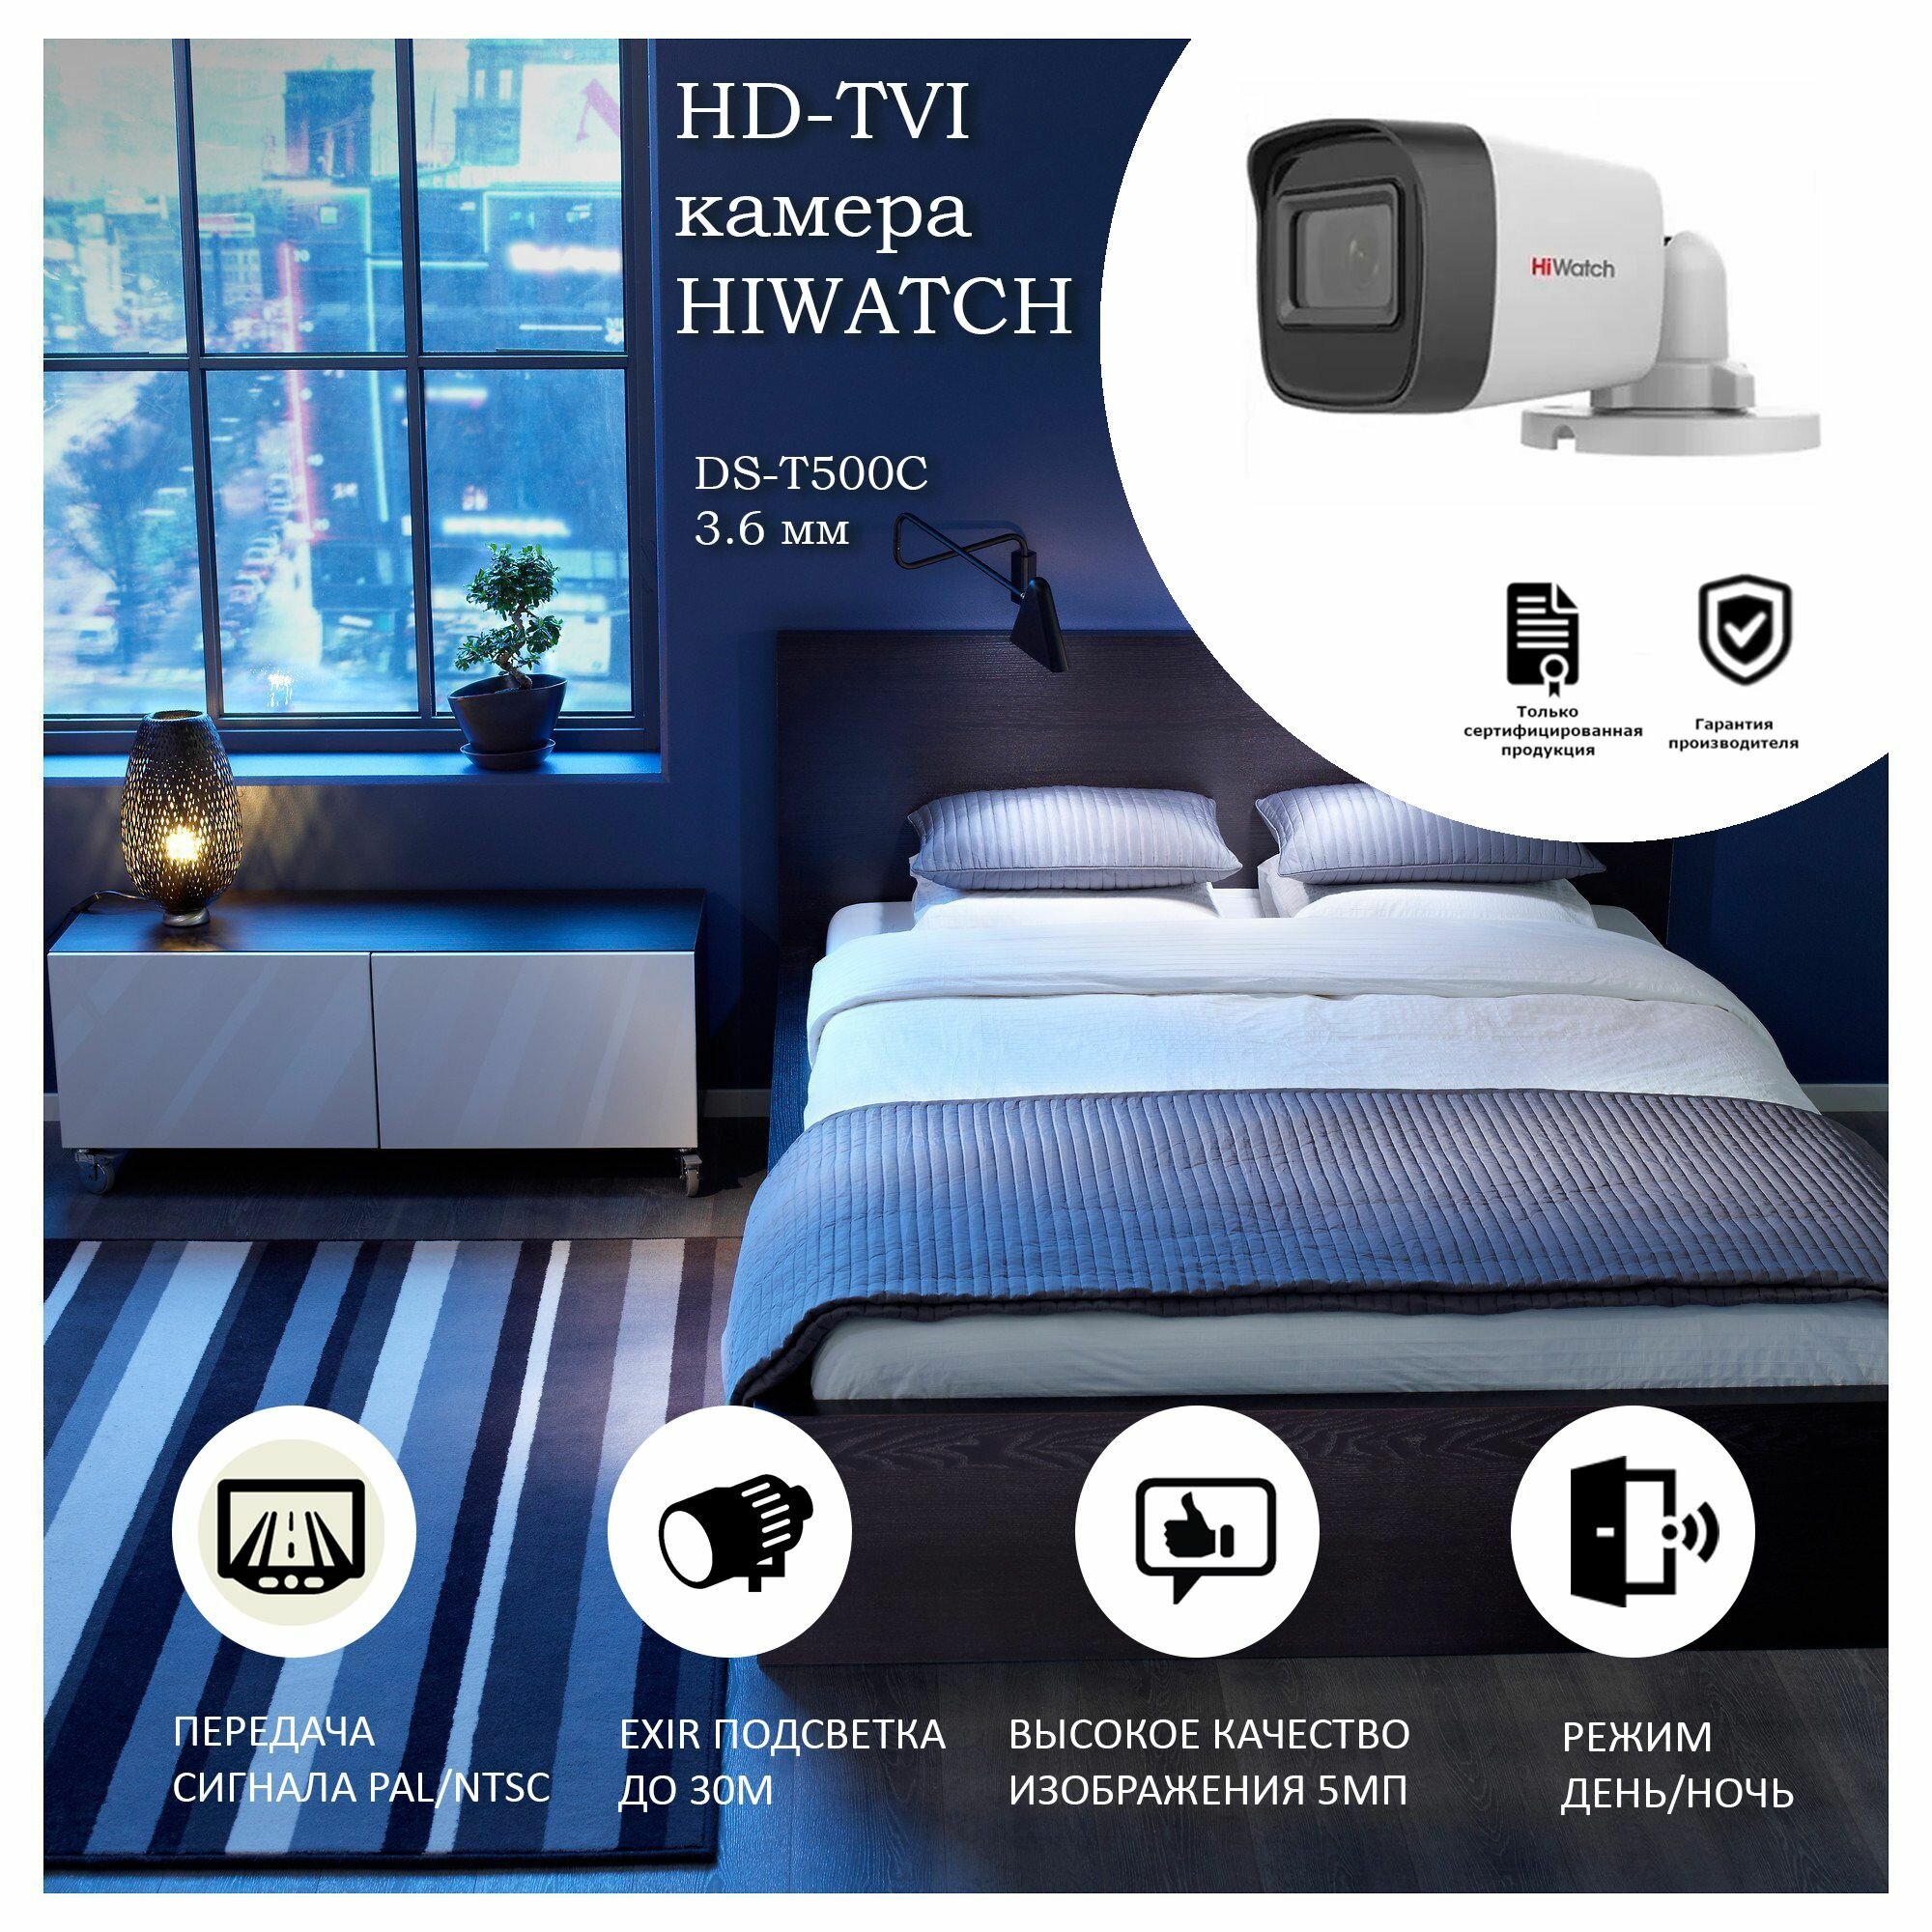 5 Мп уличная цилиндрическая HD-TVI камера HiWatch DS-T500(С) (3,6 mm) серии Value с EXIR-подсветкой до 30 м